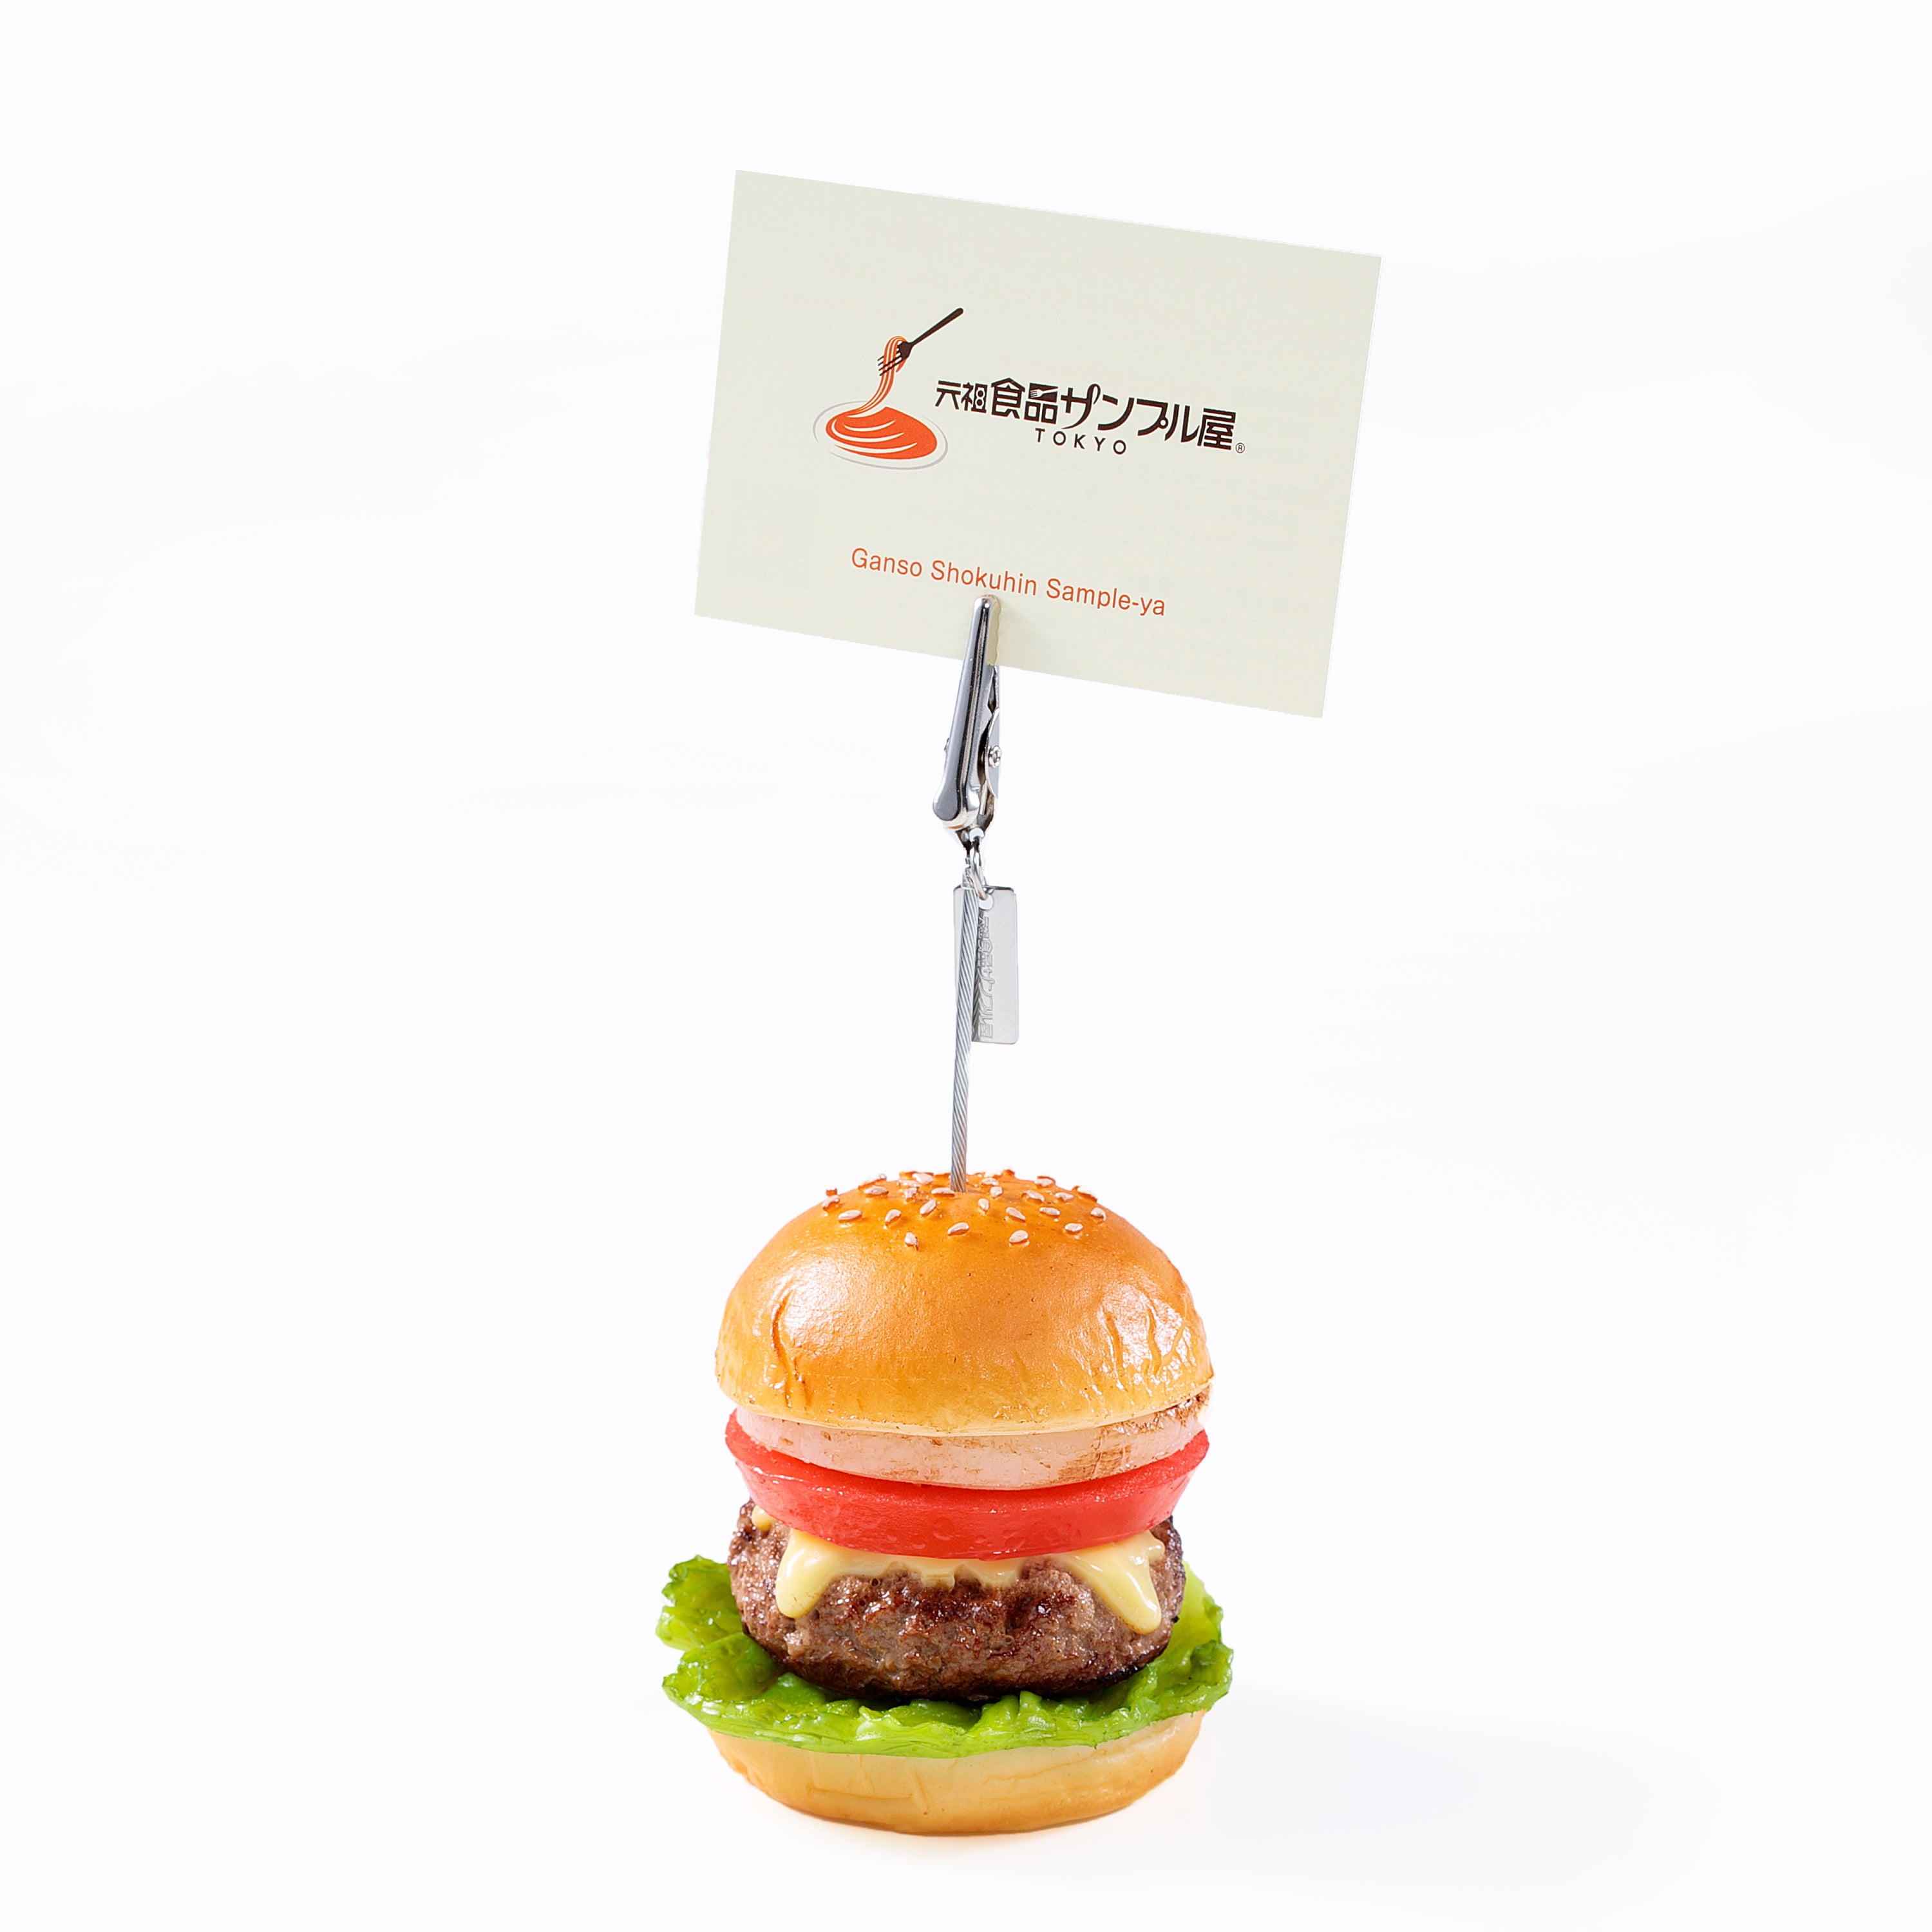 これは元祖食品サンプル屋「ハンバーガー　クリップ」のメモを挟んだ使用イメージ画像です。